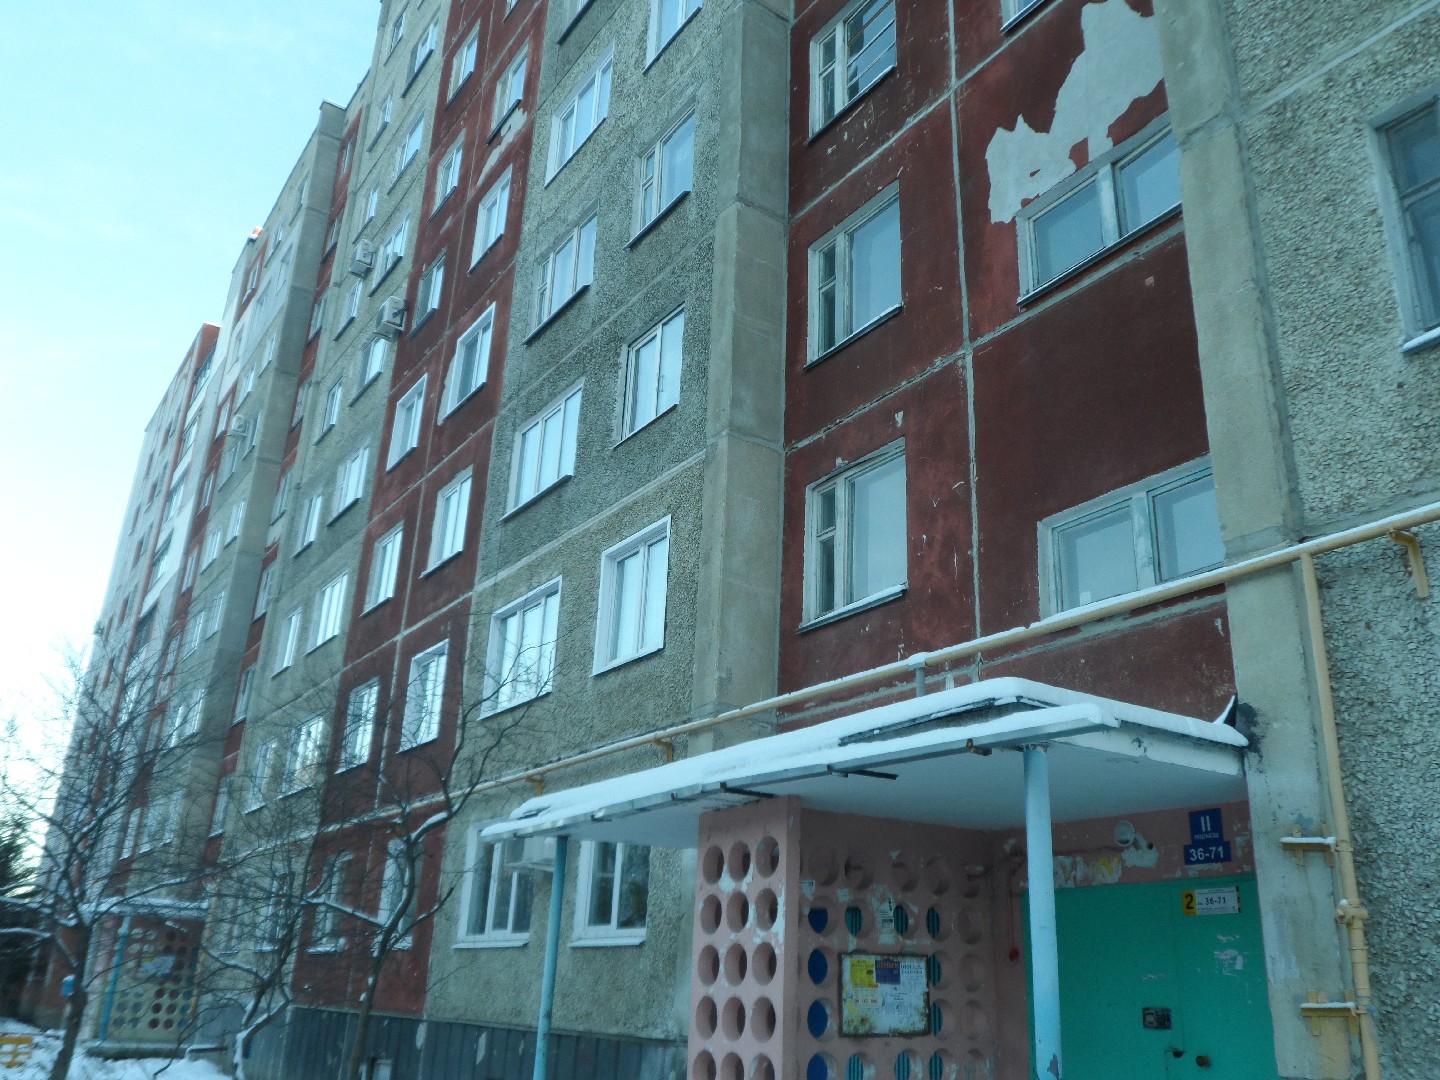 обл. Ульяновская, г. Димитровград, ул. Братская, д. 37-фасад здания